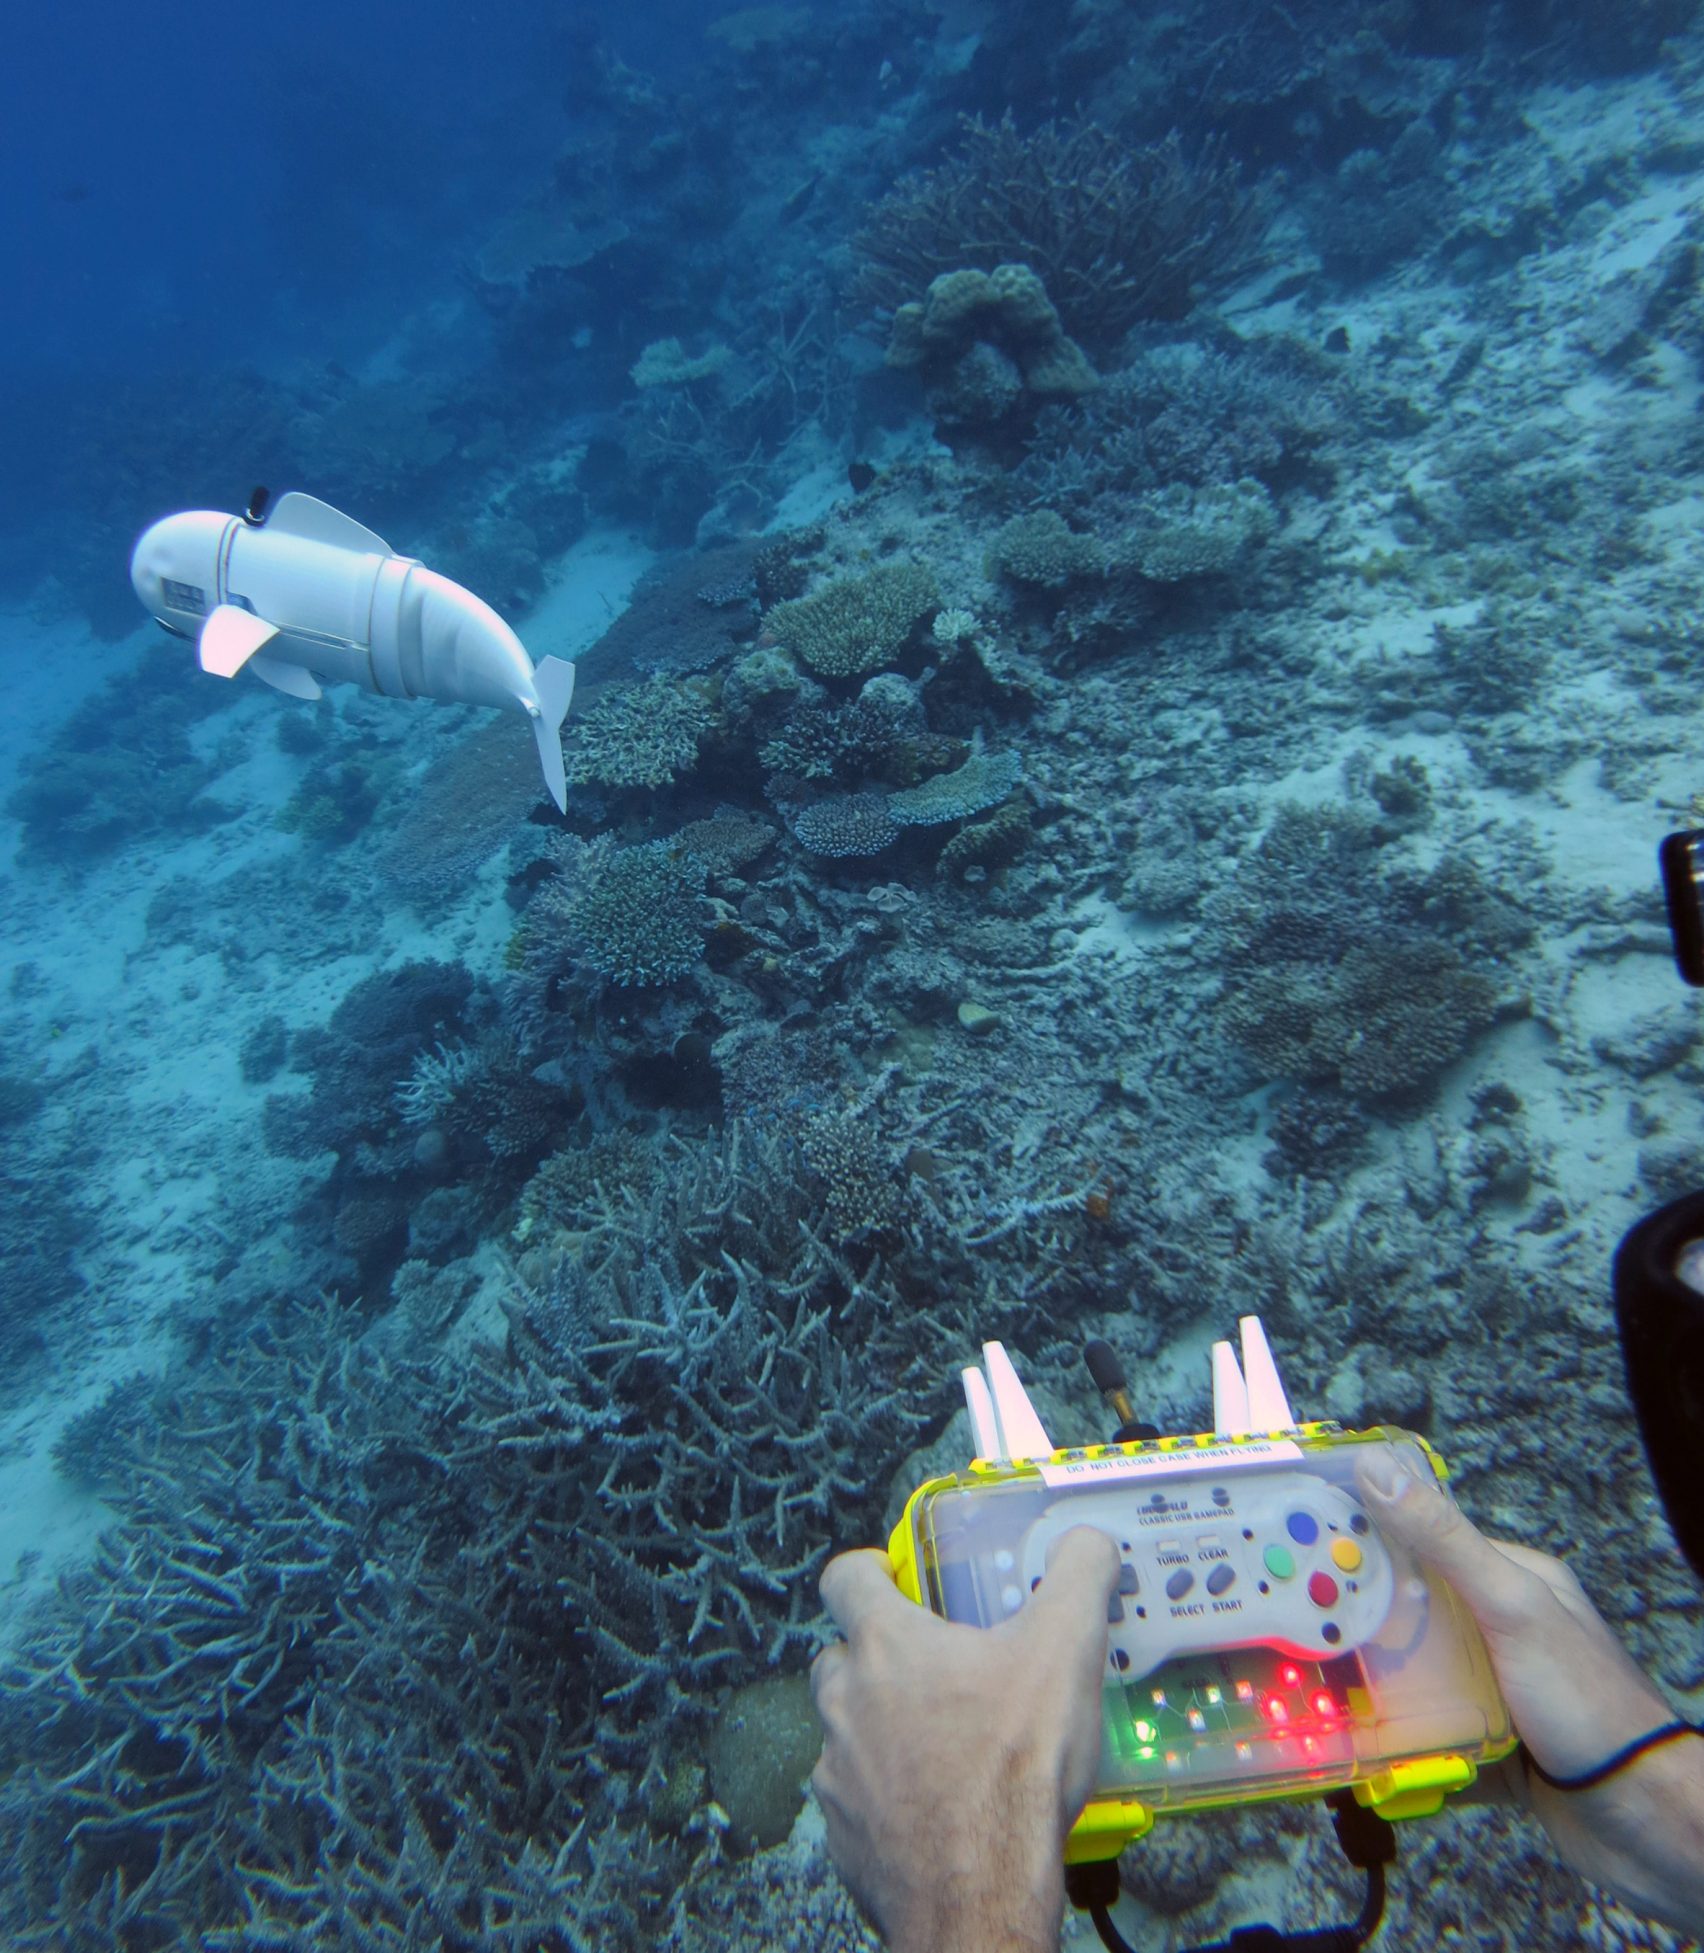 수중생물 관찰을 위한 진짜같은 로봇물고기 ‘소피’